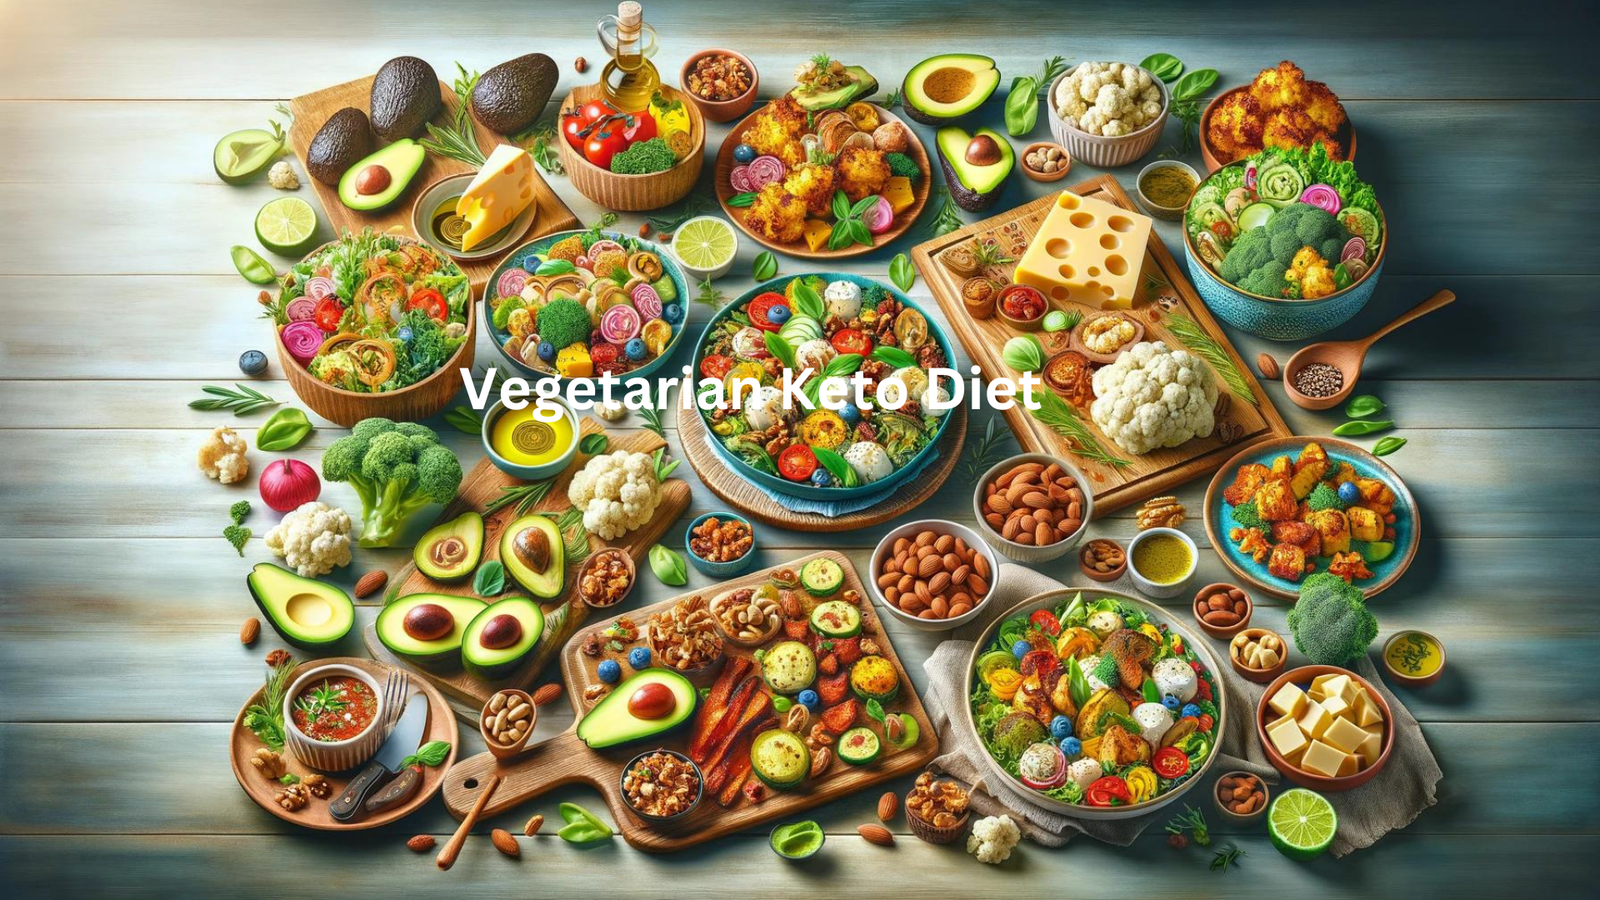 Vegetarian Keto Diet